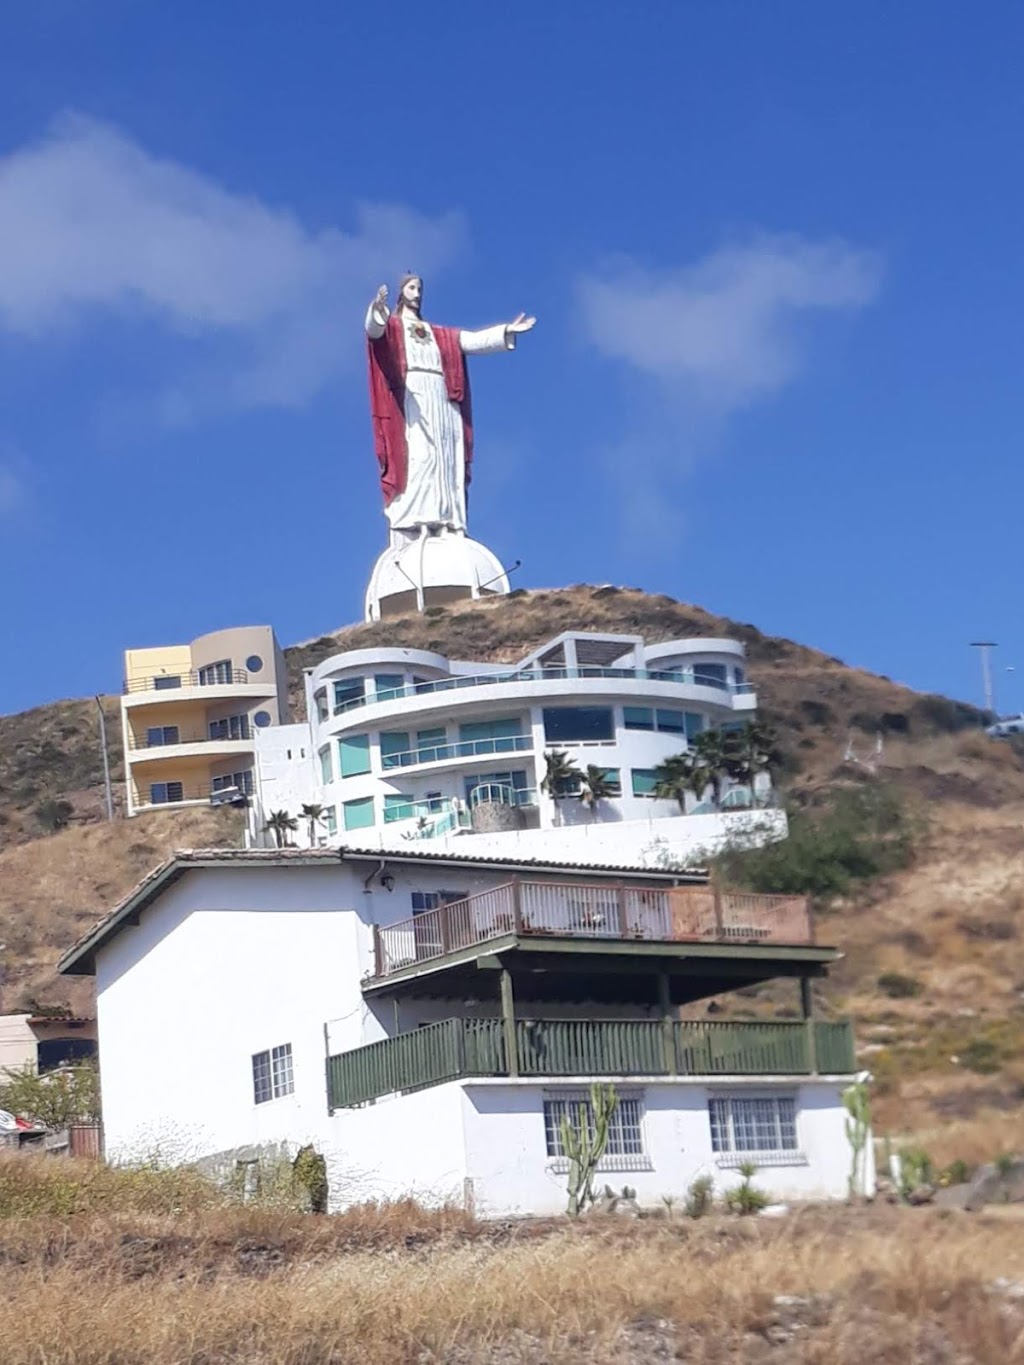 El Surfing Monkey | Kilometro 37.5 carretera libre tijuana Rosarito, Rosarito - Ensenada km 37.5, 22710 Rosarito, B.C., Mexico | Phone: 661 104 0027